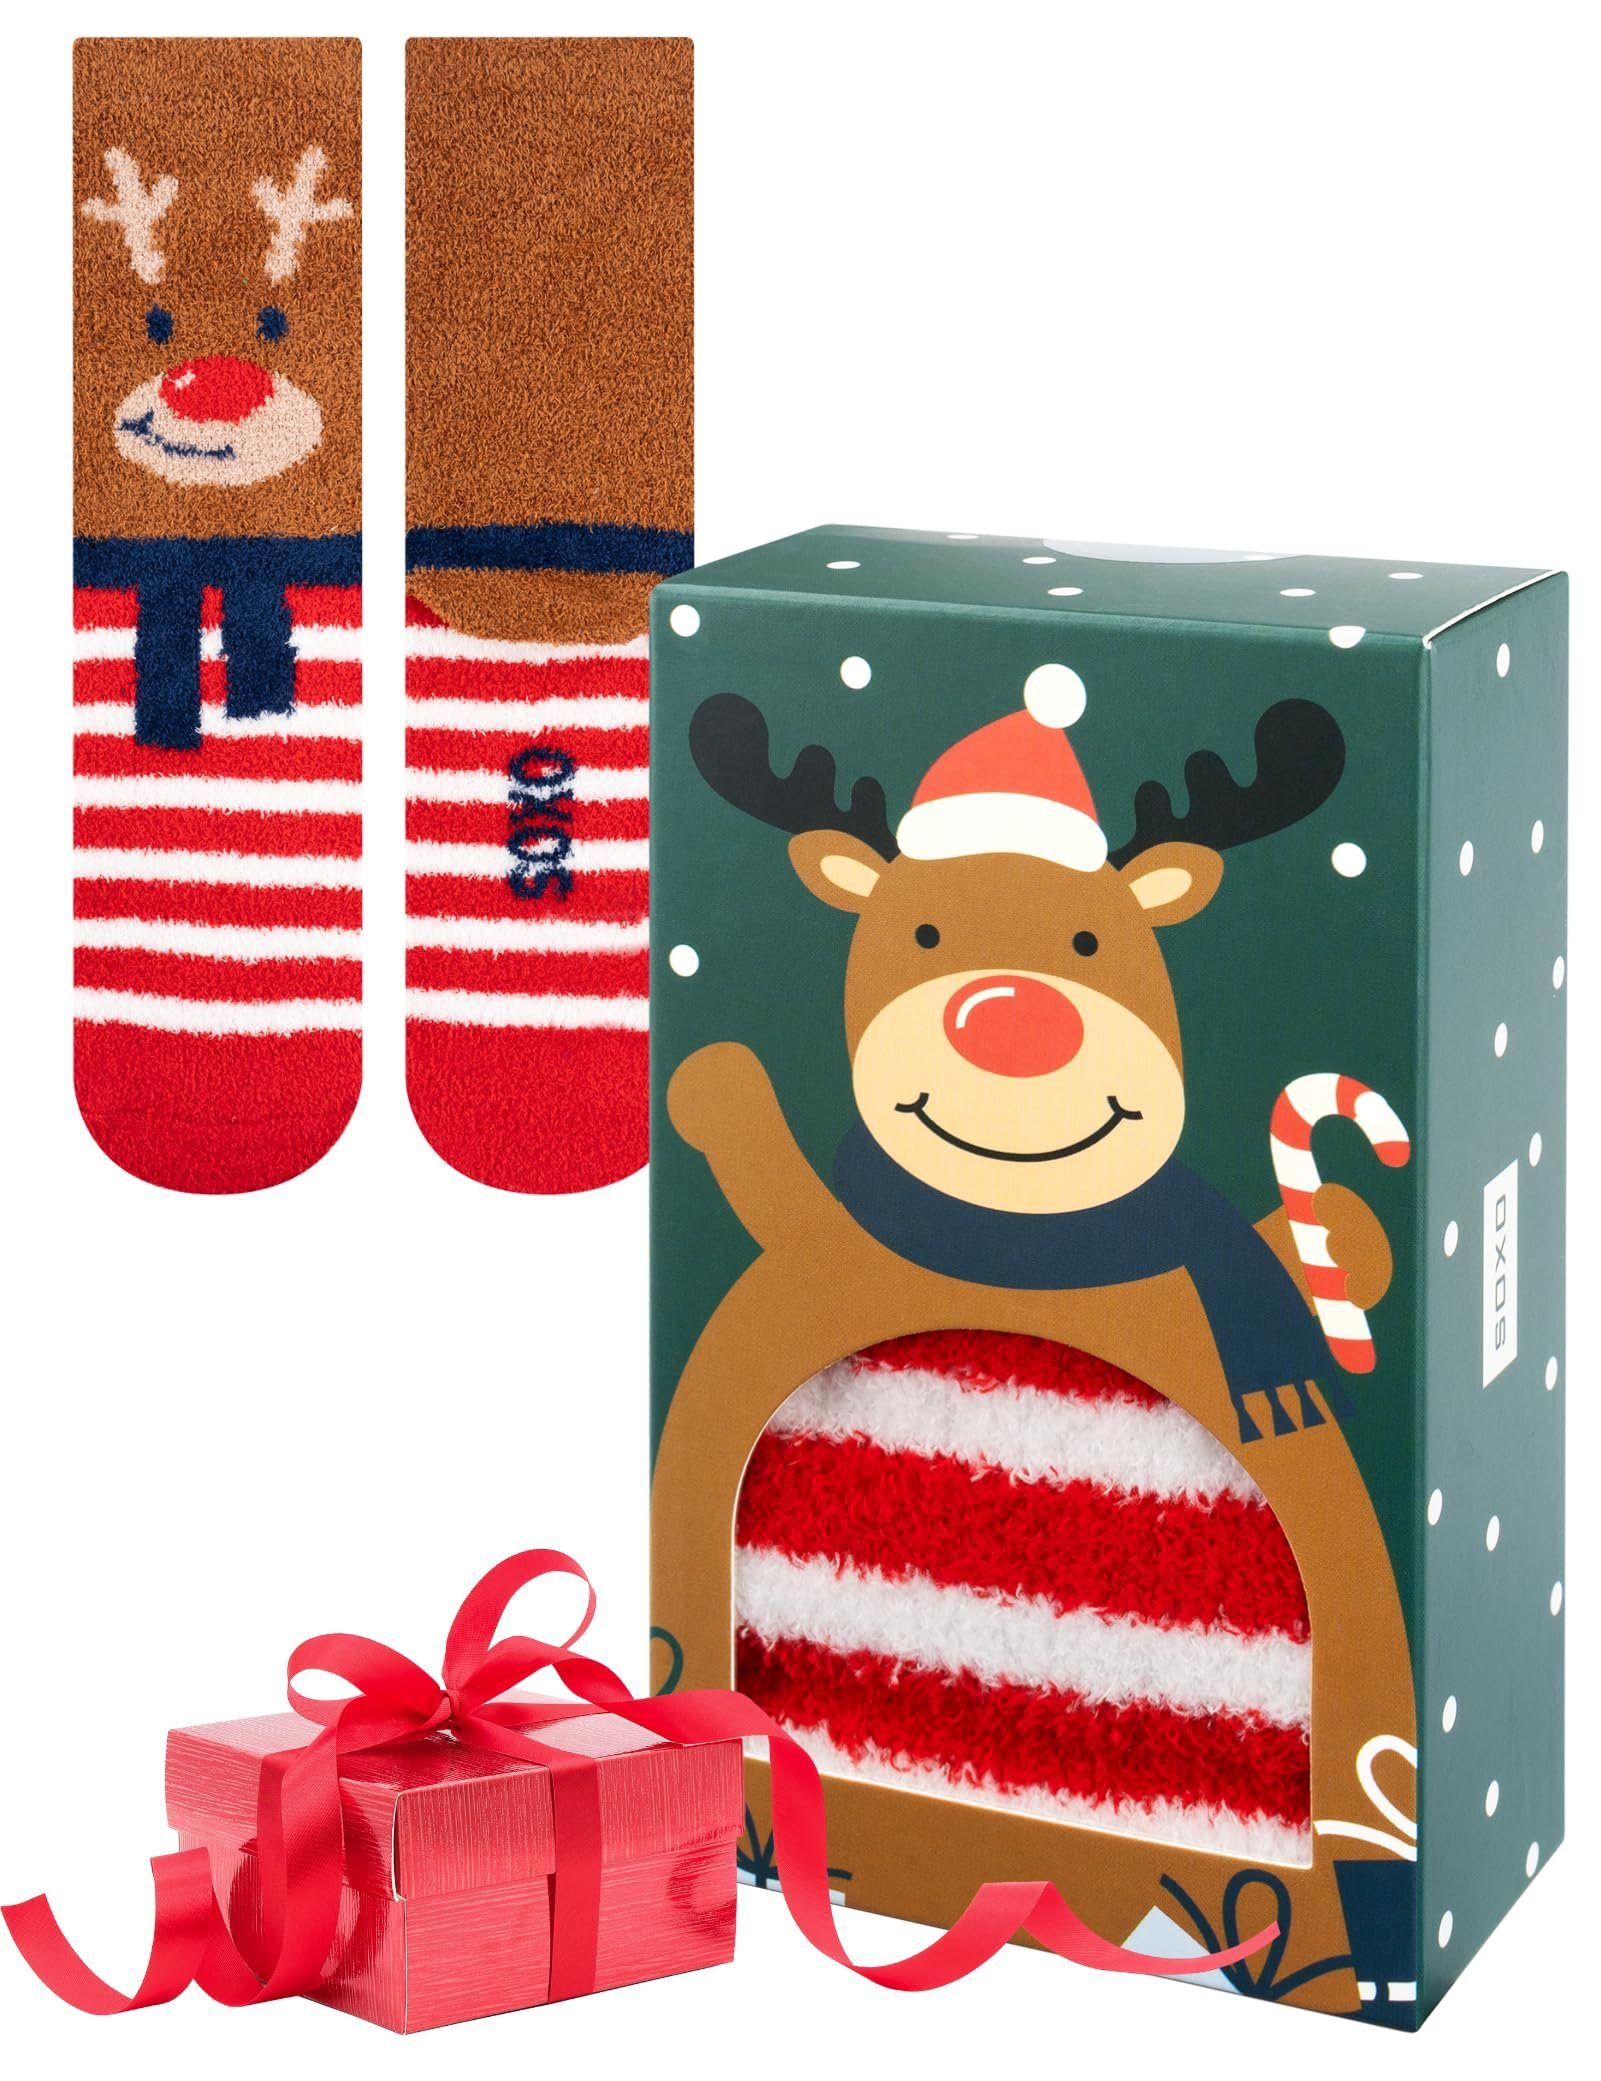 Frauen Chenille socken Warme Weihnachtssocken Paar) Socken (1 Socken Für Weihnachten Soxo Rentier Bunte